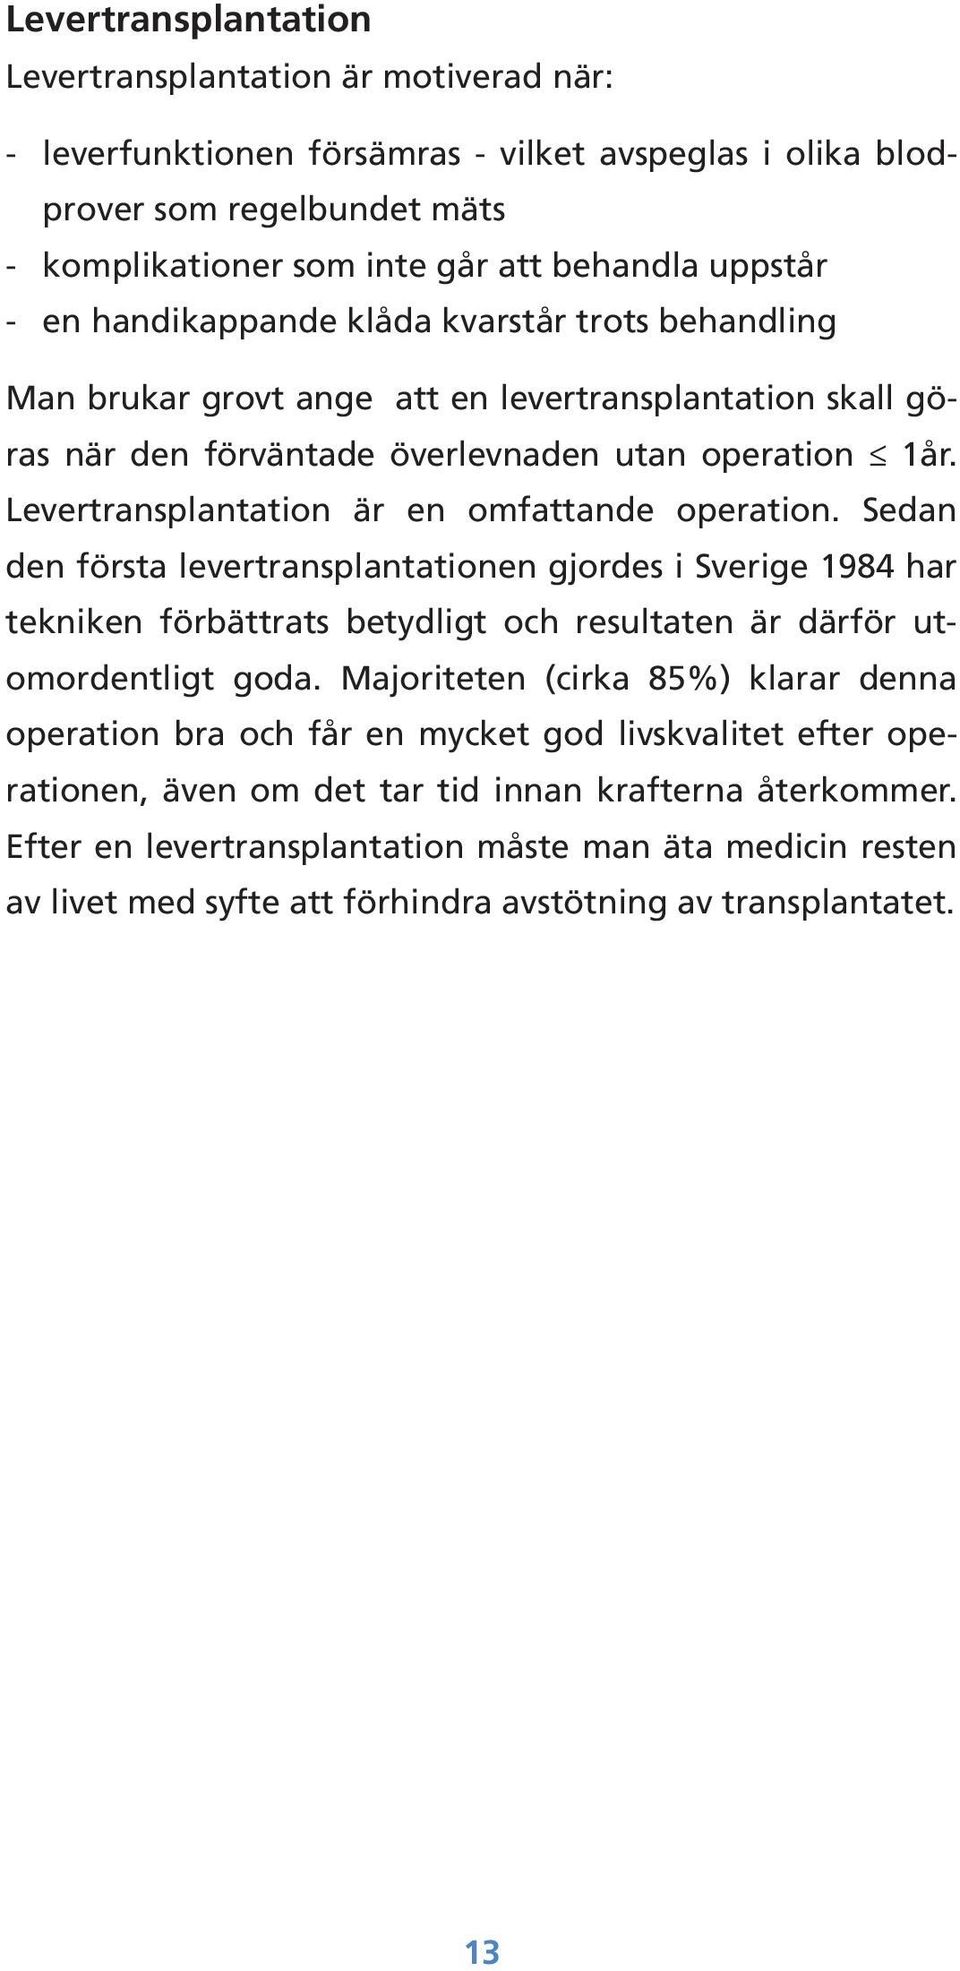 Levertransplantation är en omfattande operation. Sedan den första levertransplantationen gjordes i Sverige 1984 har tekniken förbättrats betydligt och resultaten är därför utomordentligt goda.